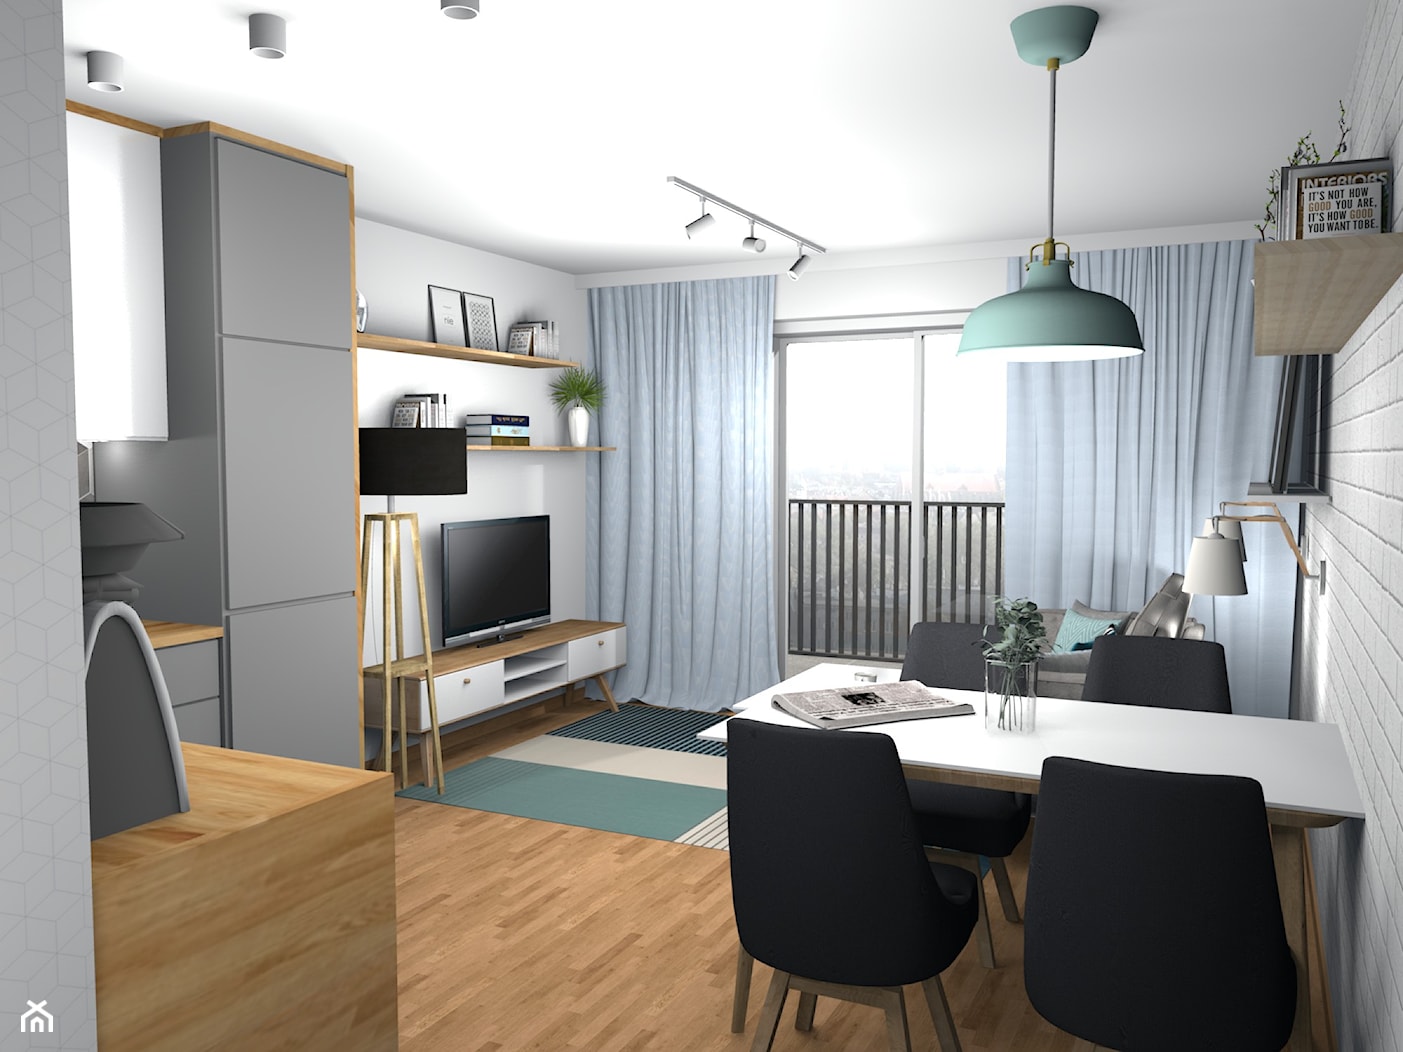 Spokojne mieszkanie z mięta i białą cegłą 19m2 - Średnia biała jadalnia w salonie w kuchni, styl skandynawski - zdjęcie od Pracownia Kardamon - Homebook